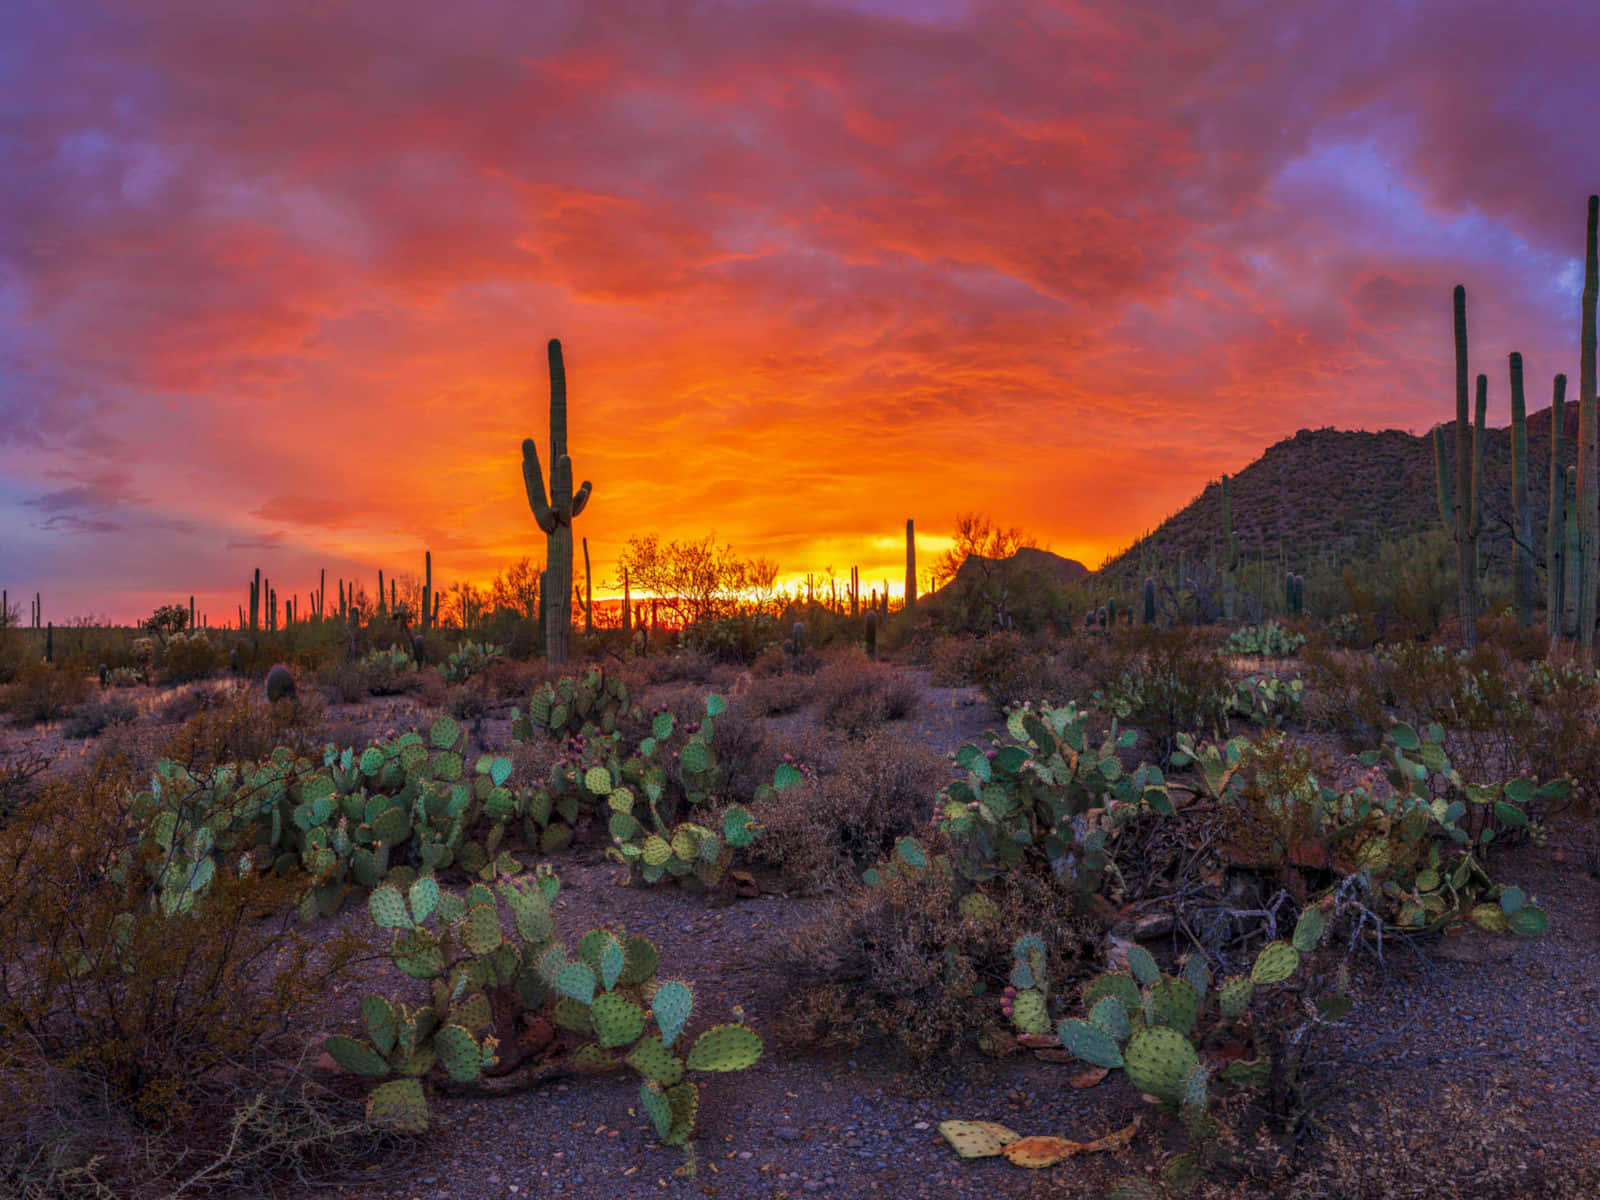 “Experience the beauty of Arizona's landscape”